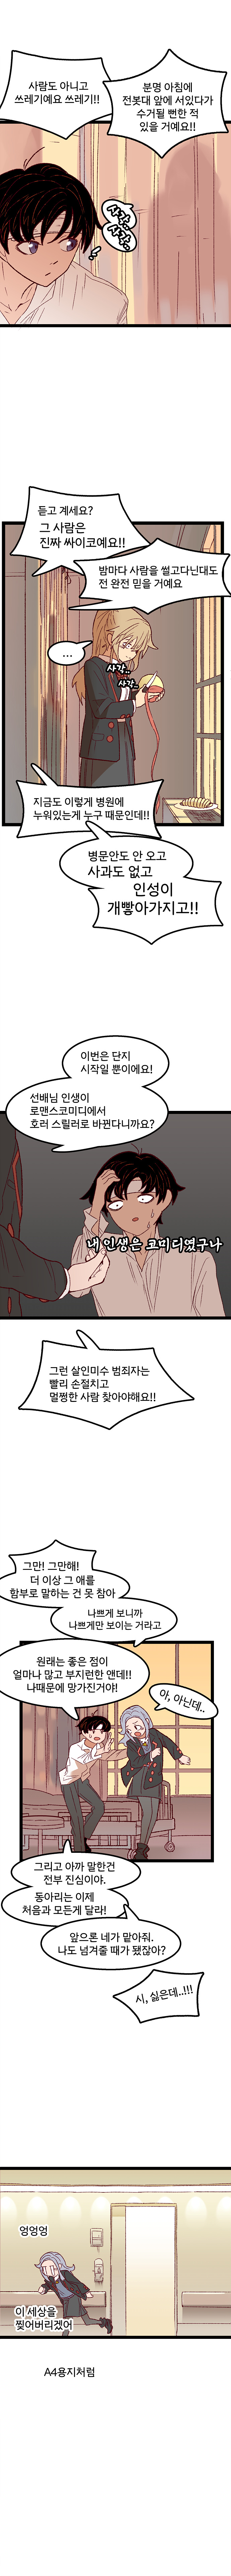 manhwa) 사이비종교 연애만화